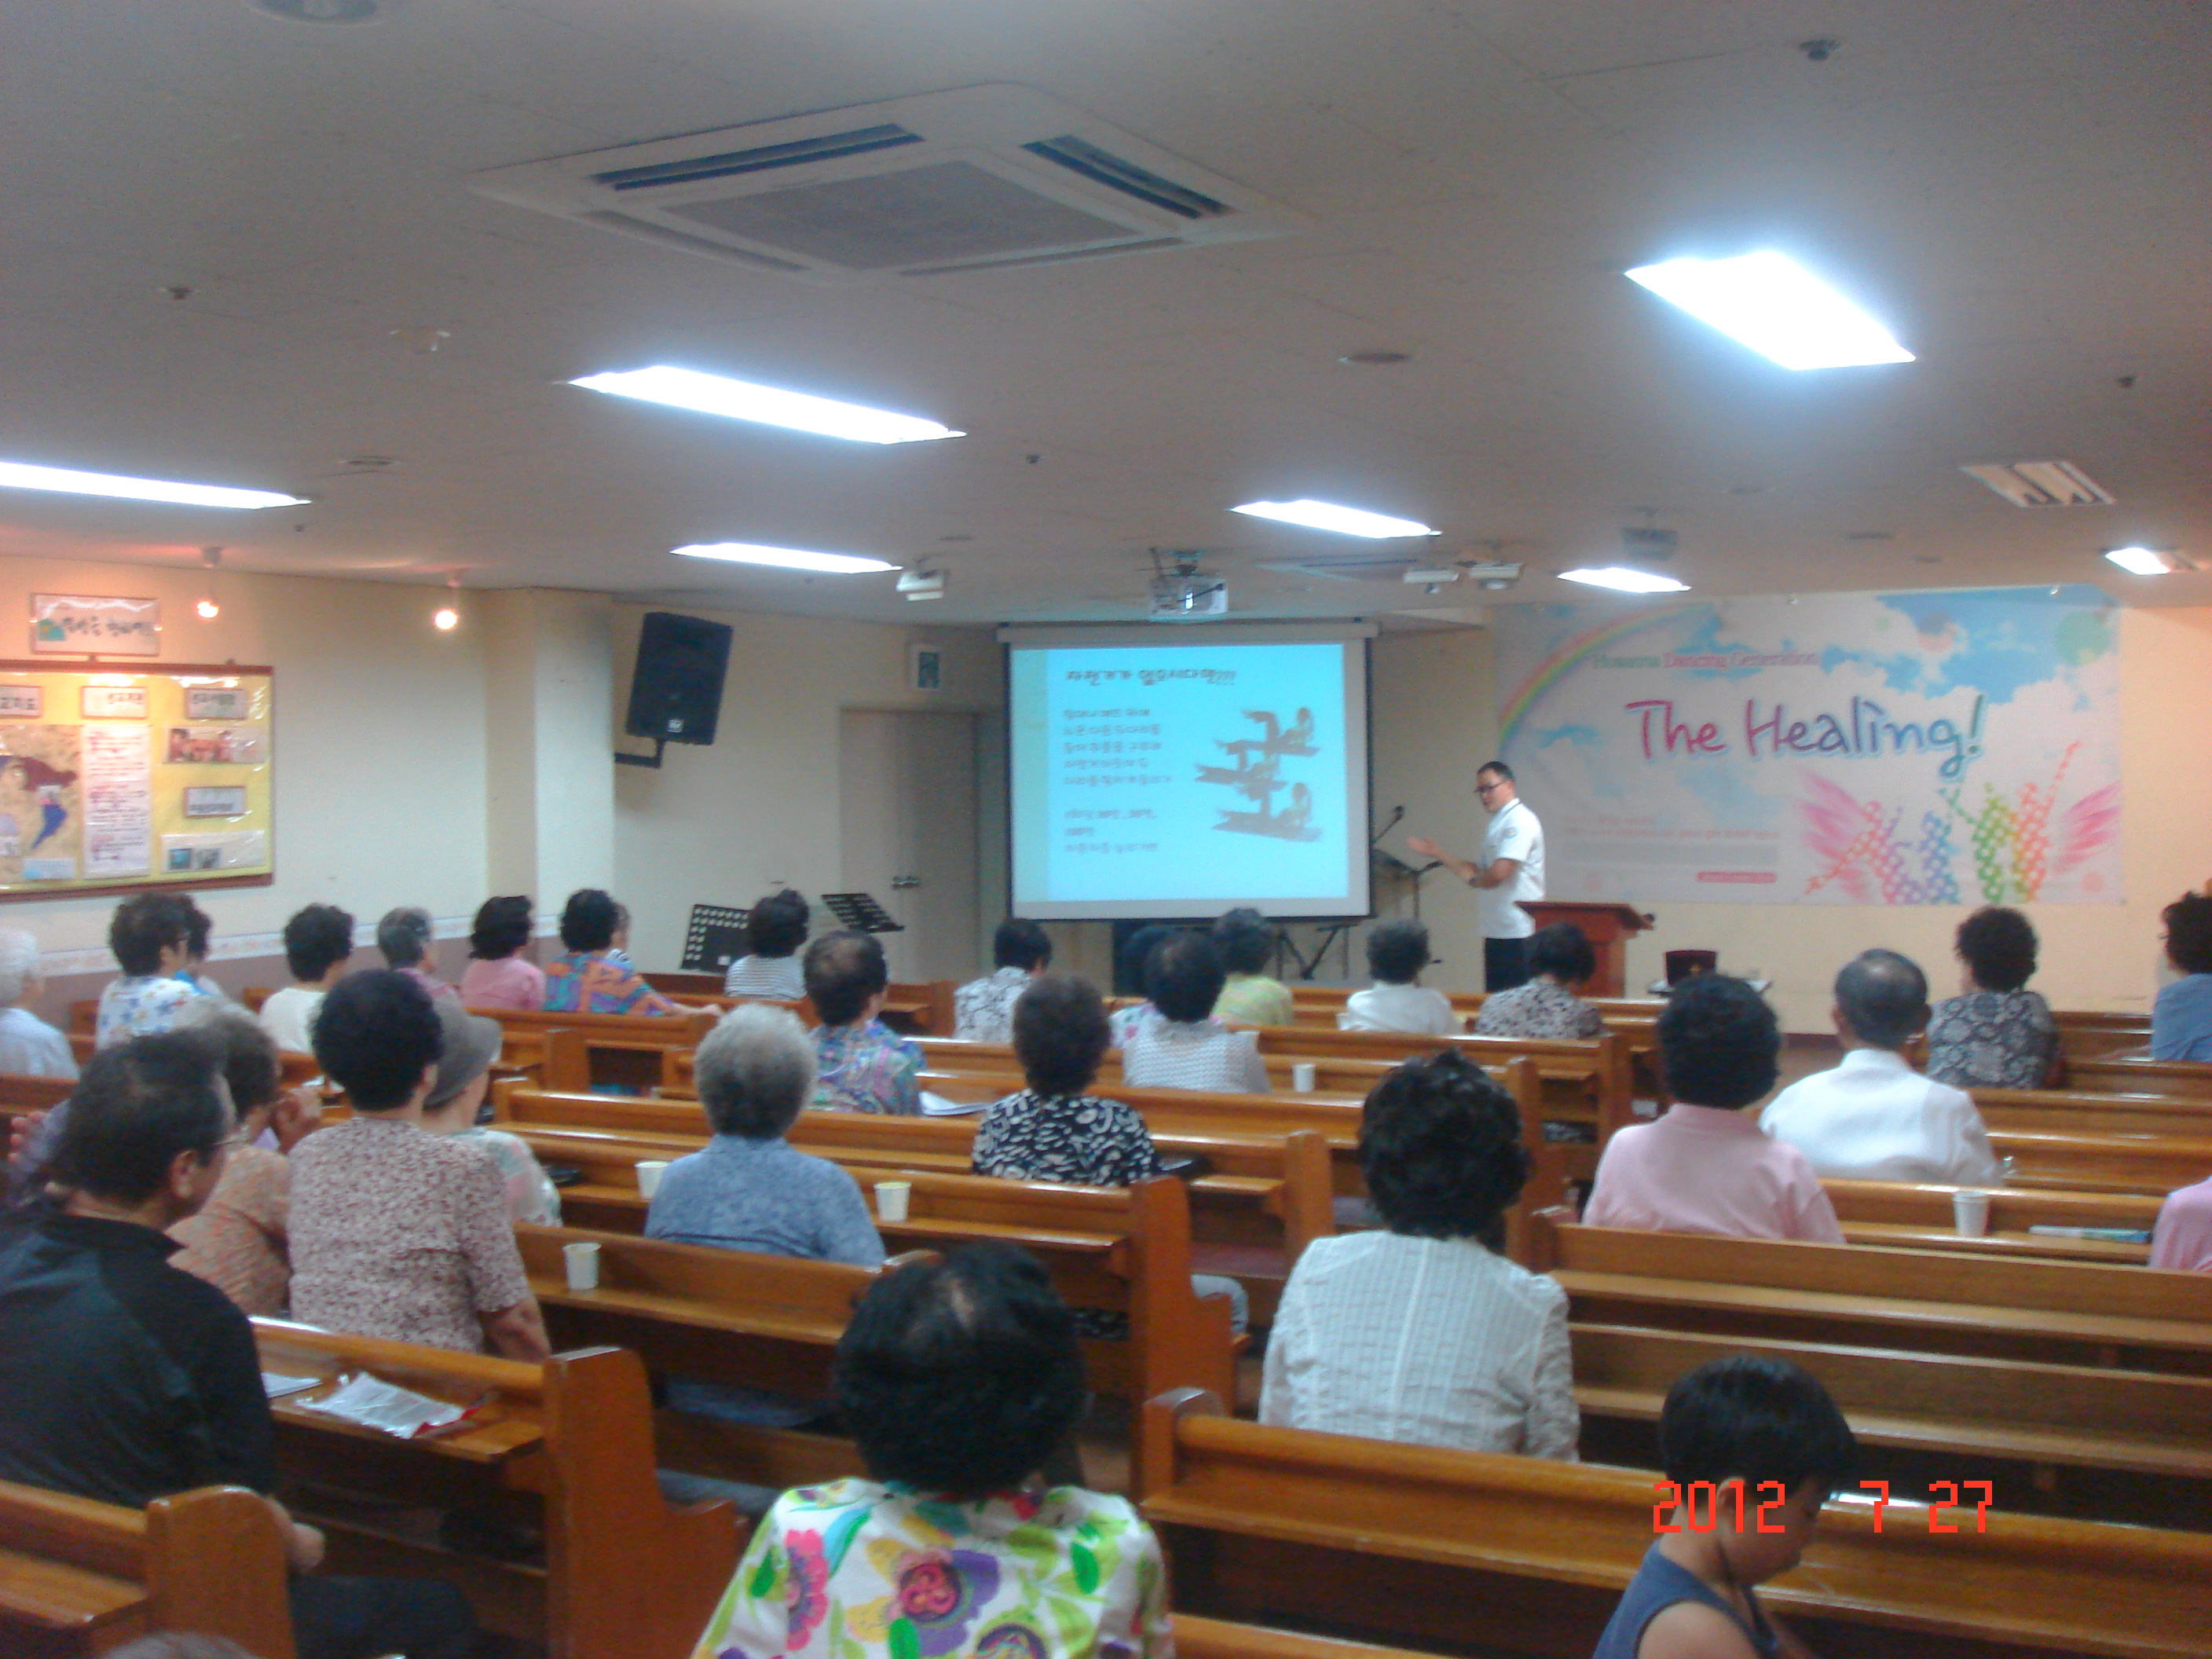 2012년 7월 27일 - 호산나교회 의료봉사 게시글의 6번째 첨부파일입니다.